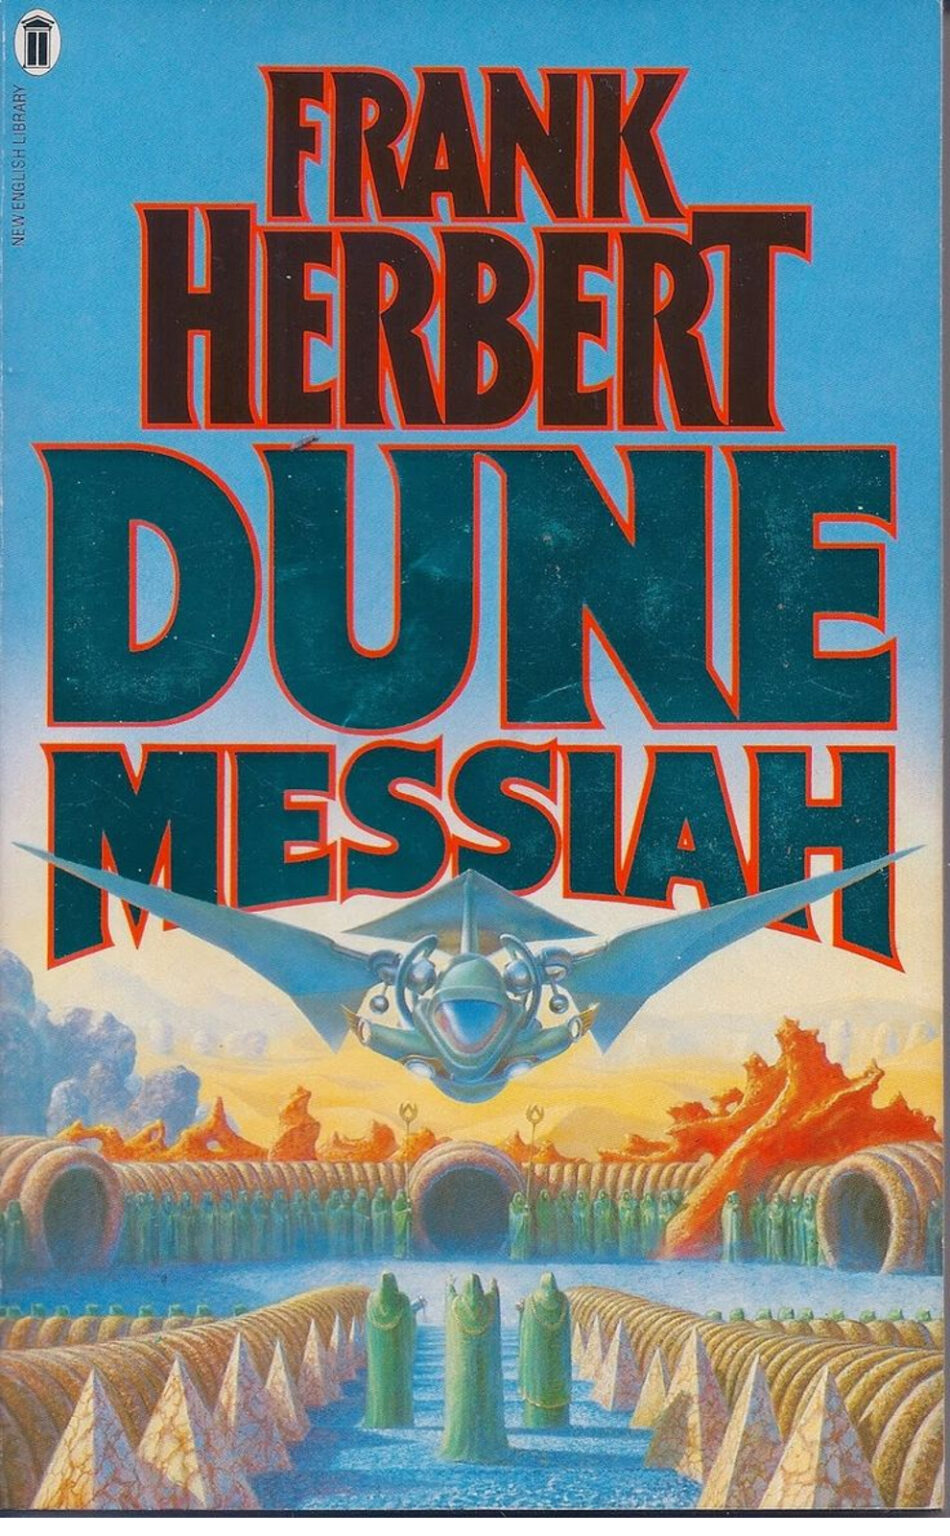 Дюна обложка. Герберт Мессия дюны обложка. Фрэнк Herbert's Dune обложка. Мессия дюны Фрэнк Герберт книга. Фрэнк Герберт Дюна обложка.